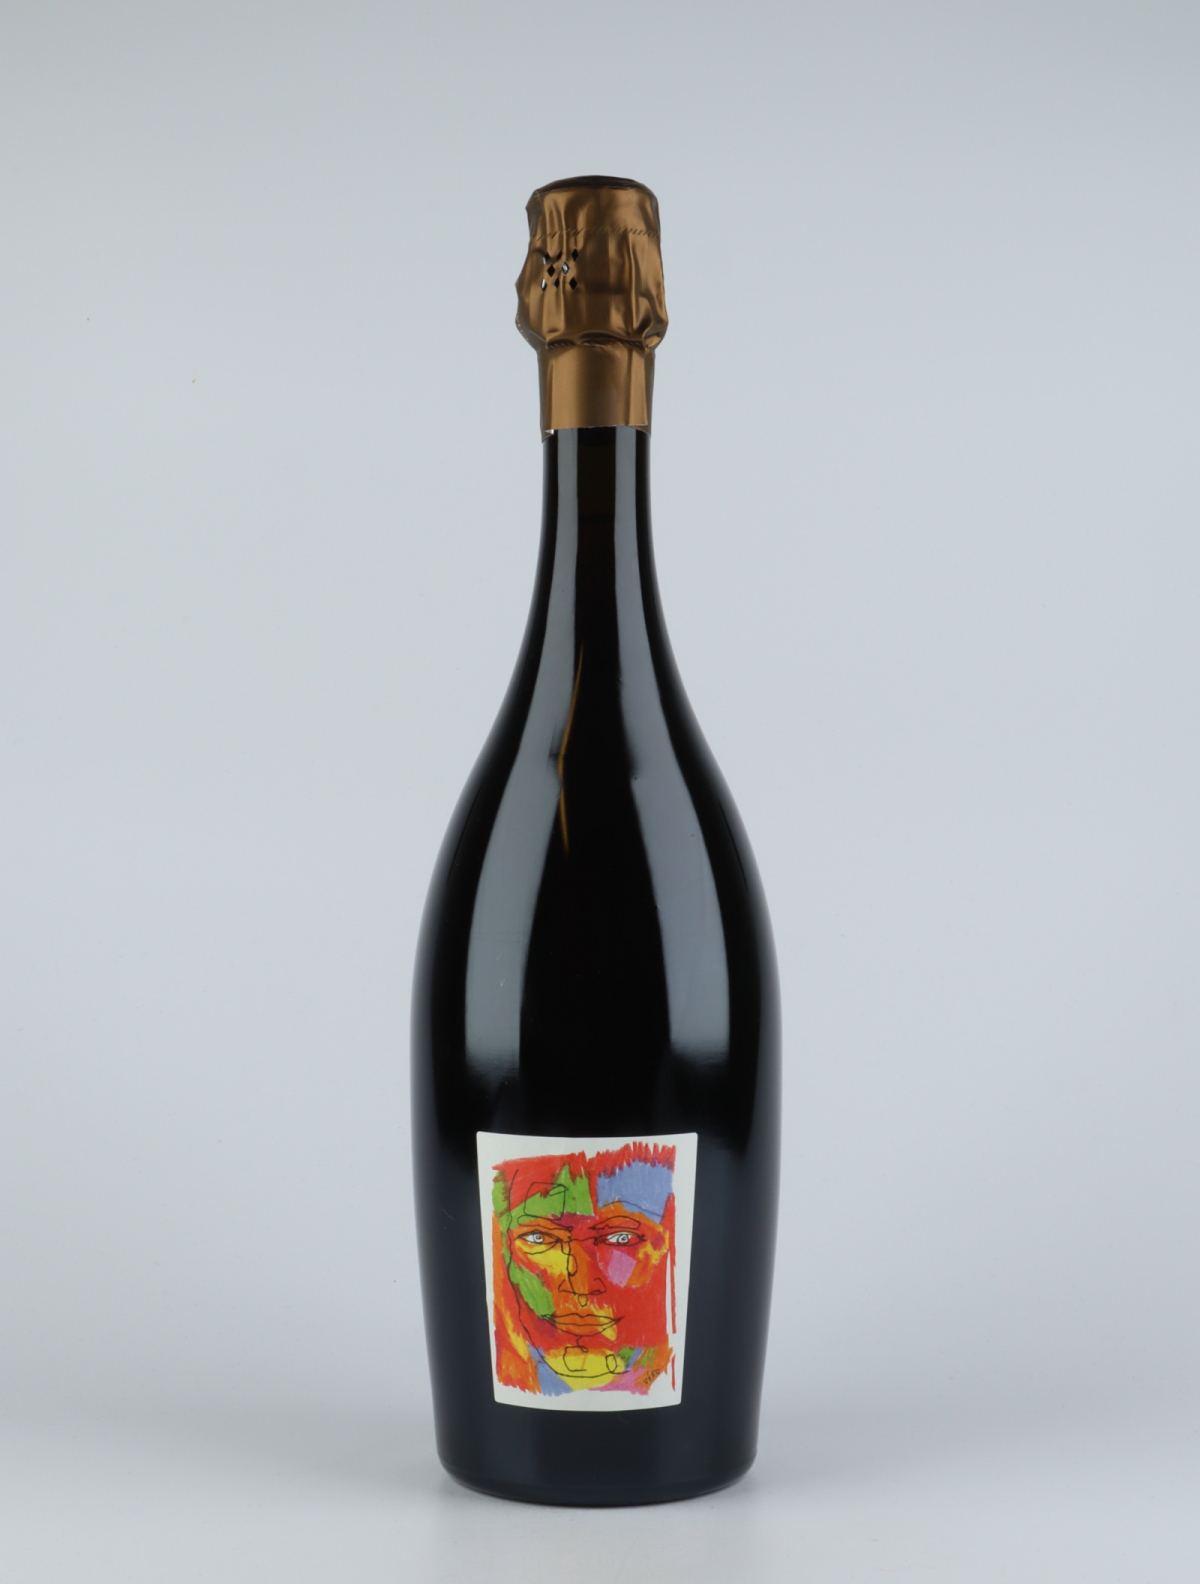 A bottle 2013 Logos Rosé Brut Nature Sparkling from Stroebel, Champagne in France